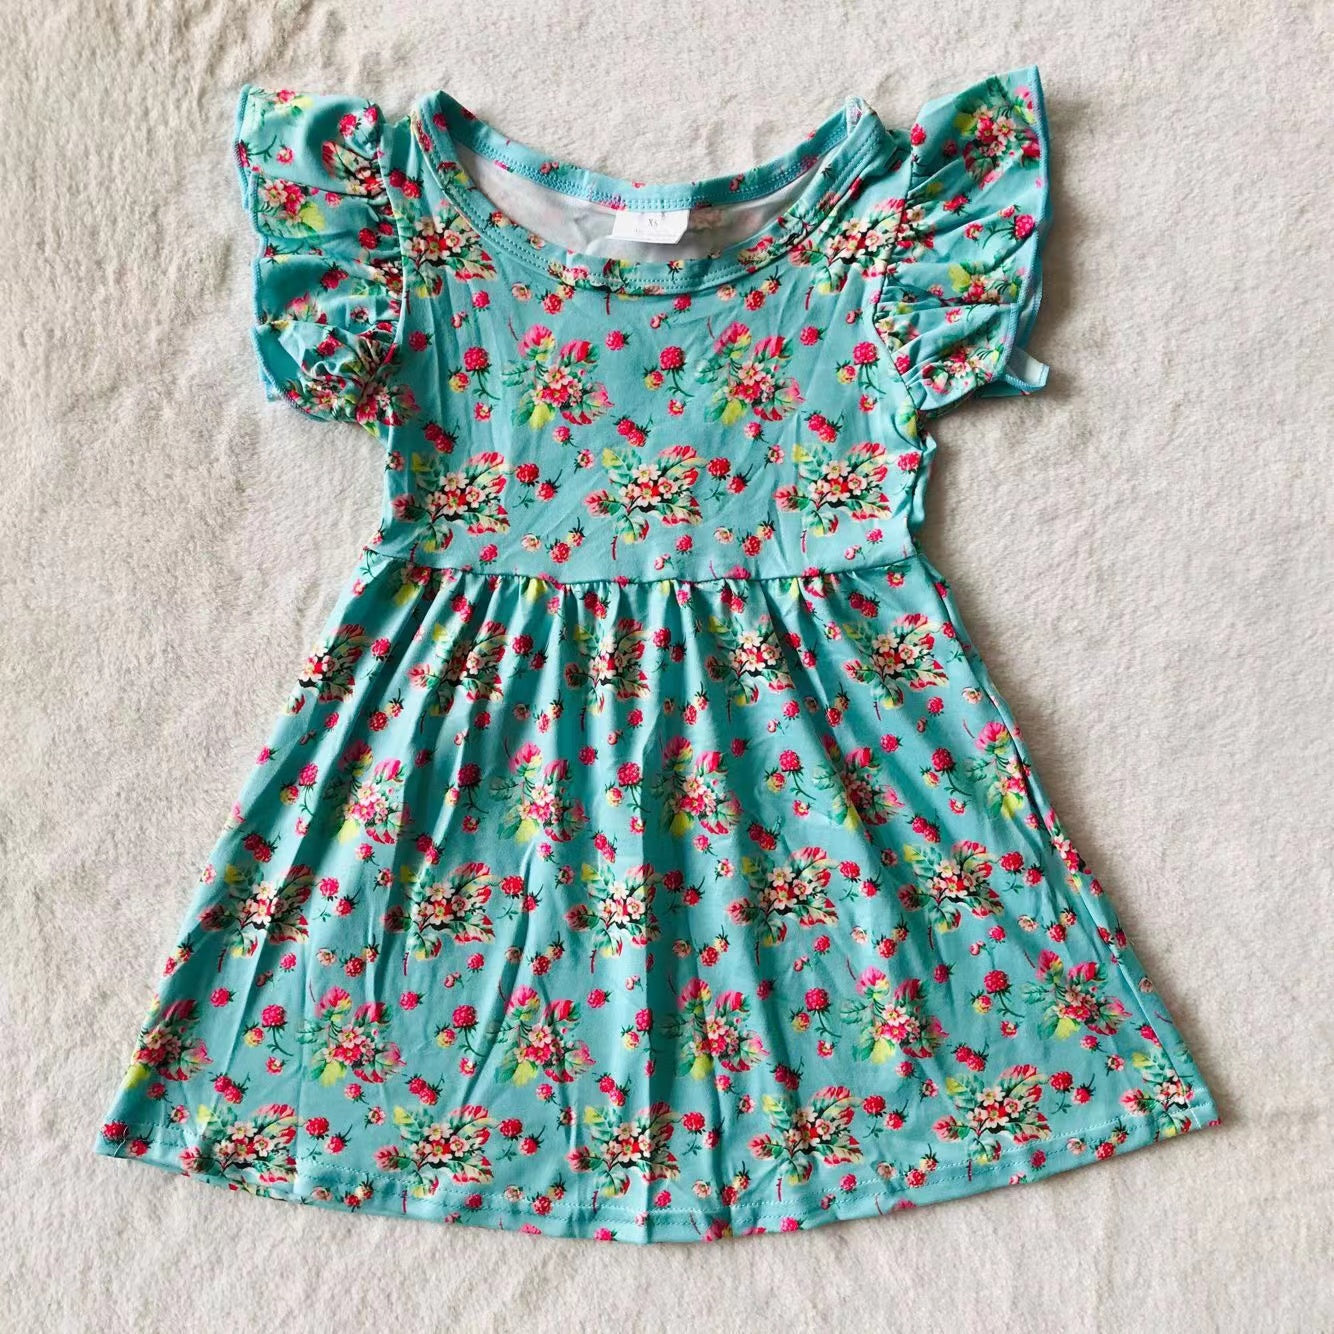 Baby girls summer Blue floral dresses